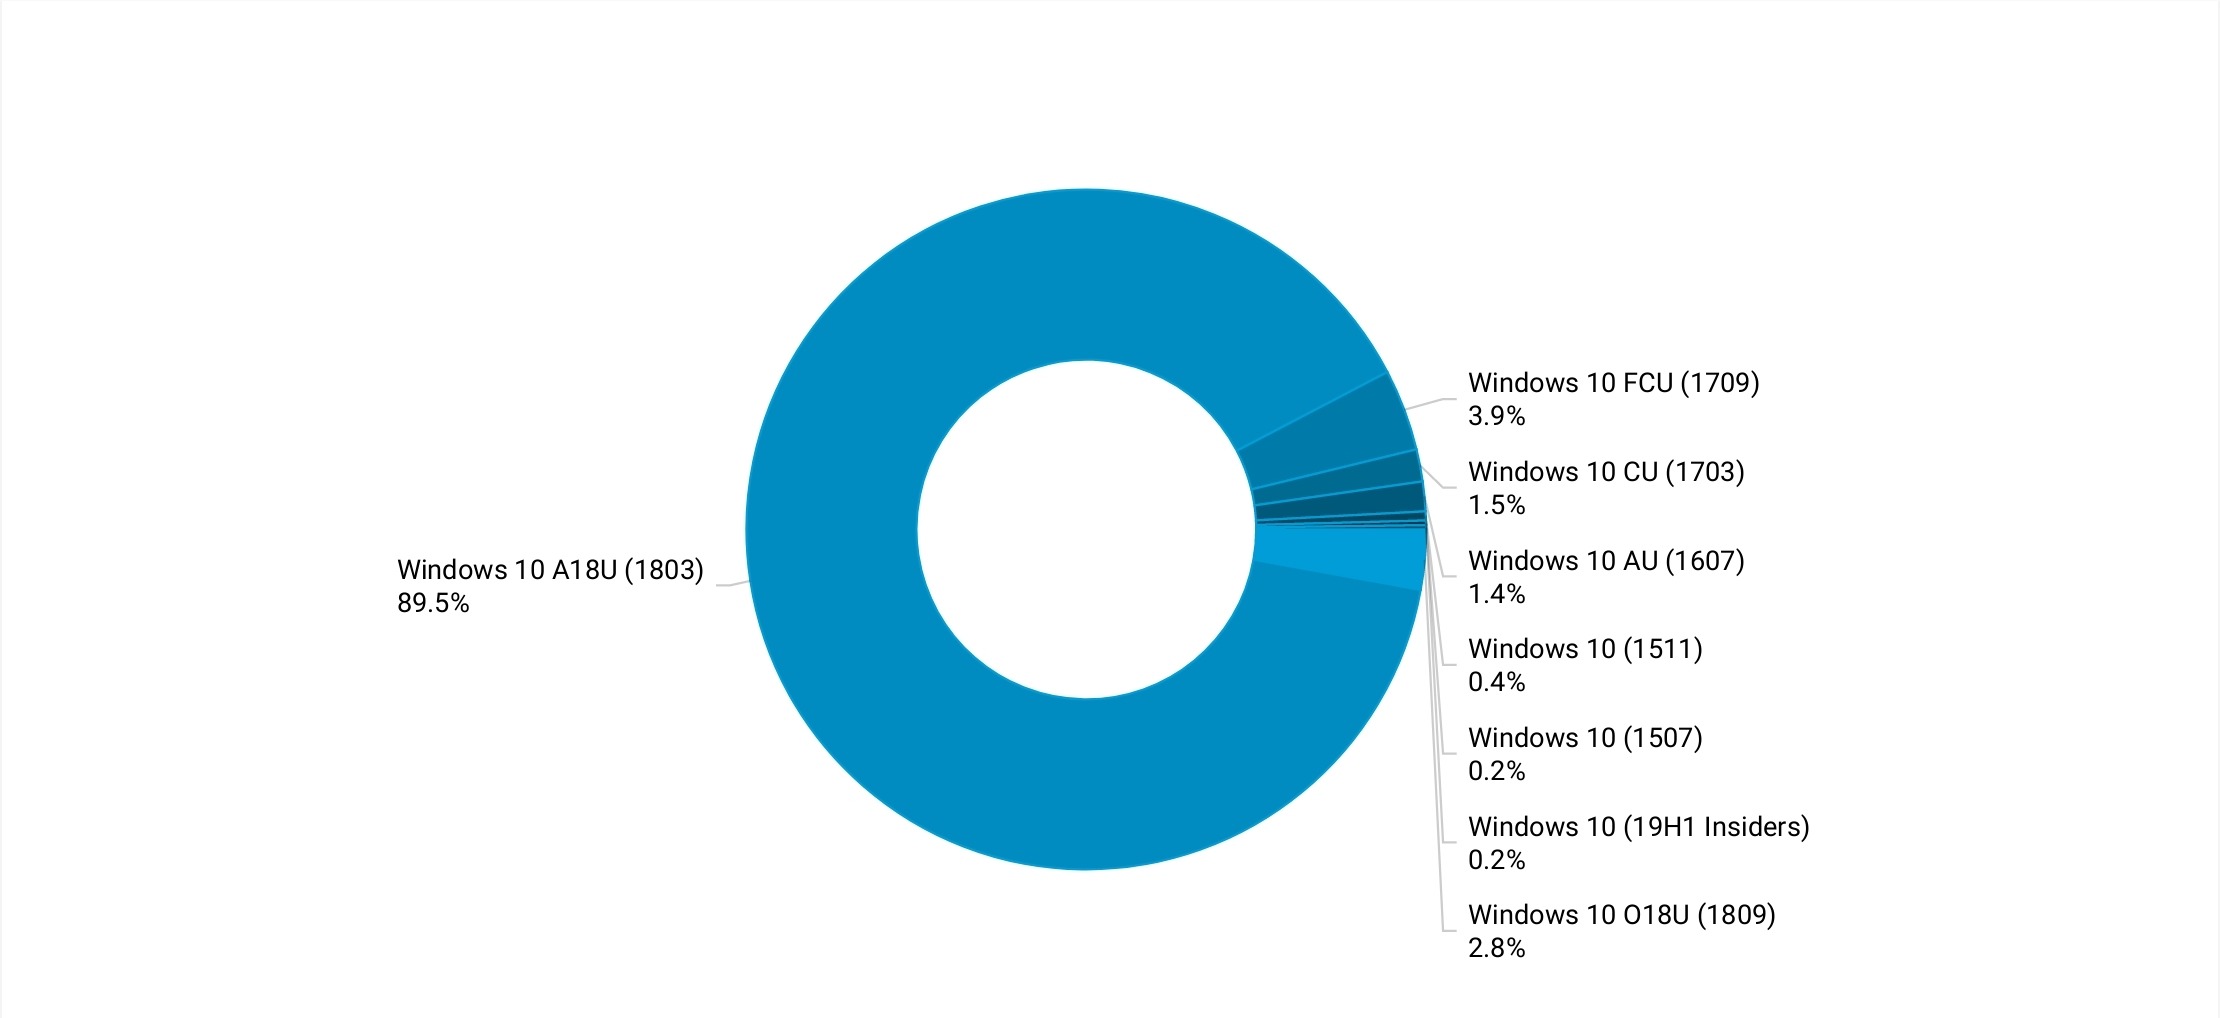 Le percentuali di Windows 10 riguardo i suoi update